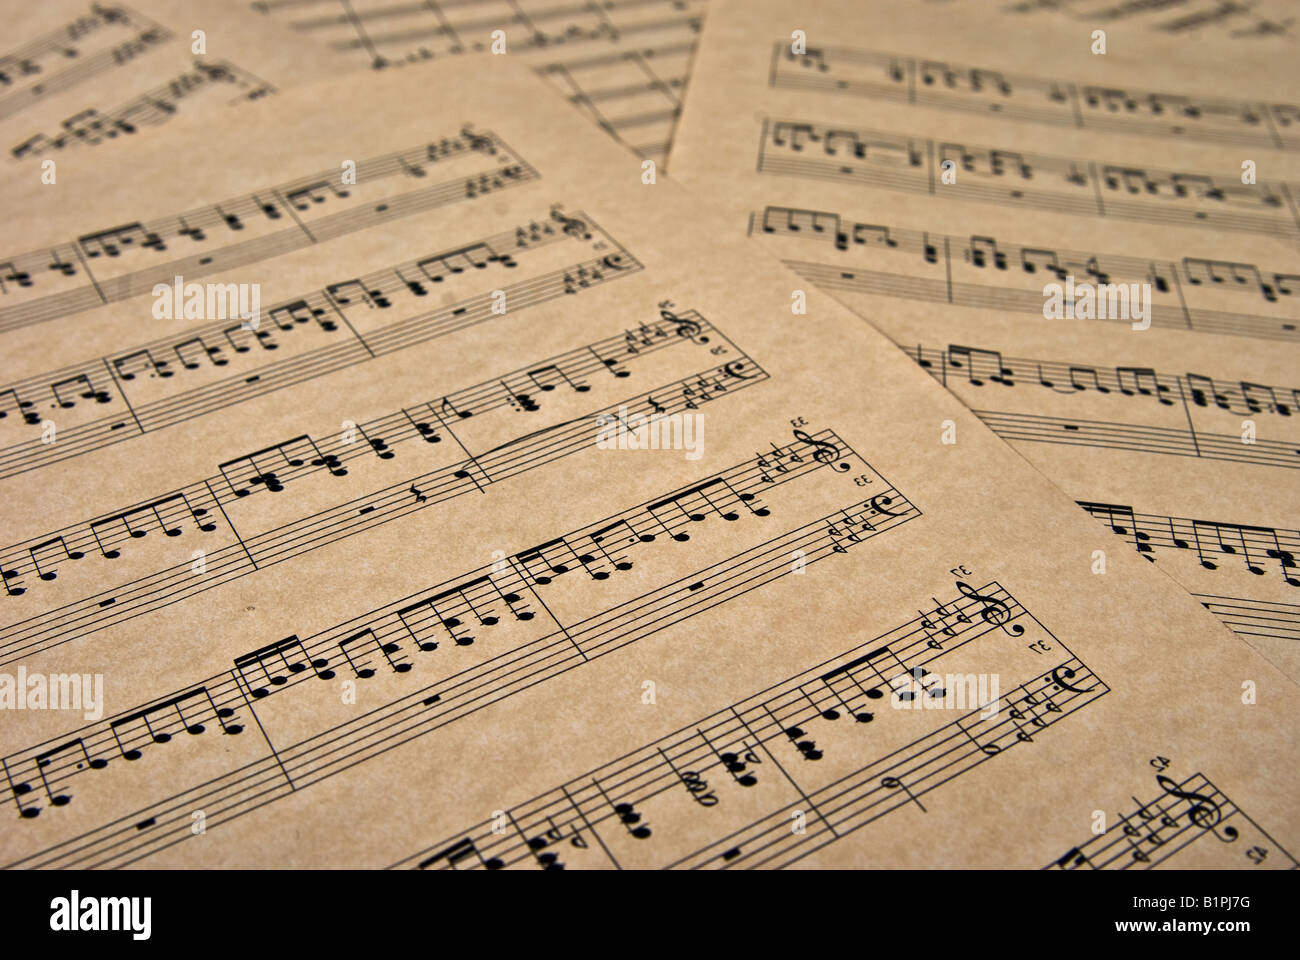 Grande image de notes de musique sur papier parchemin brun Banque D'Images